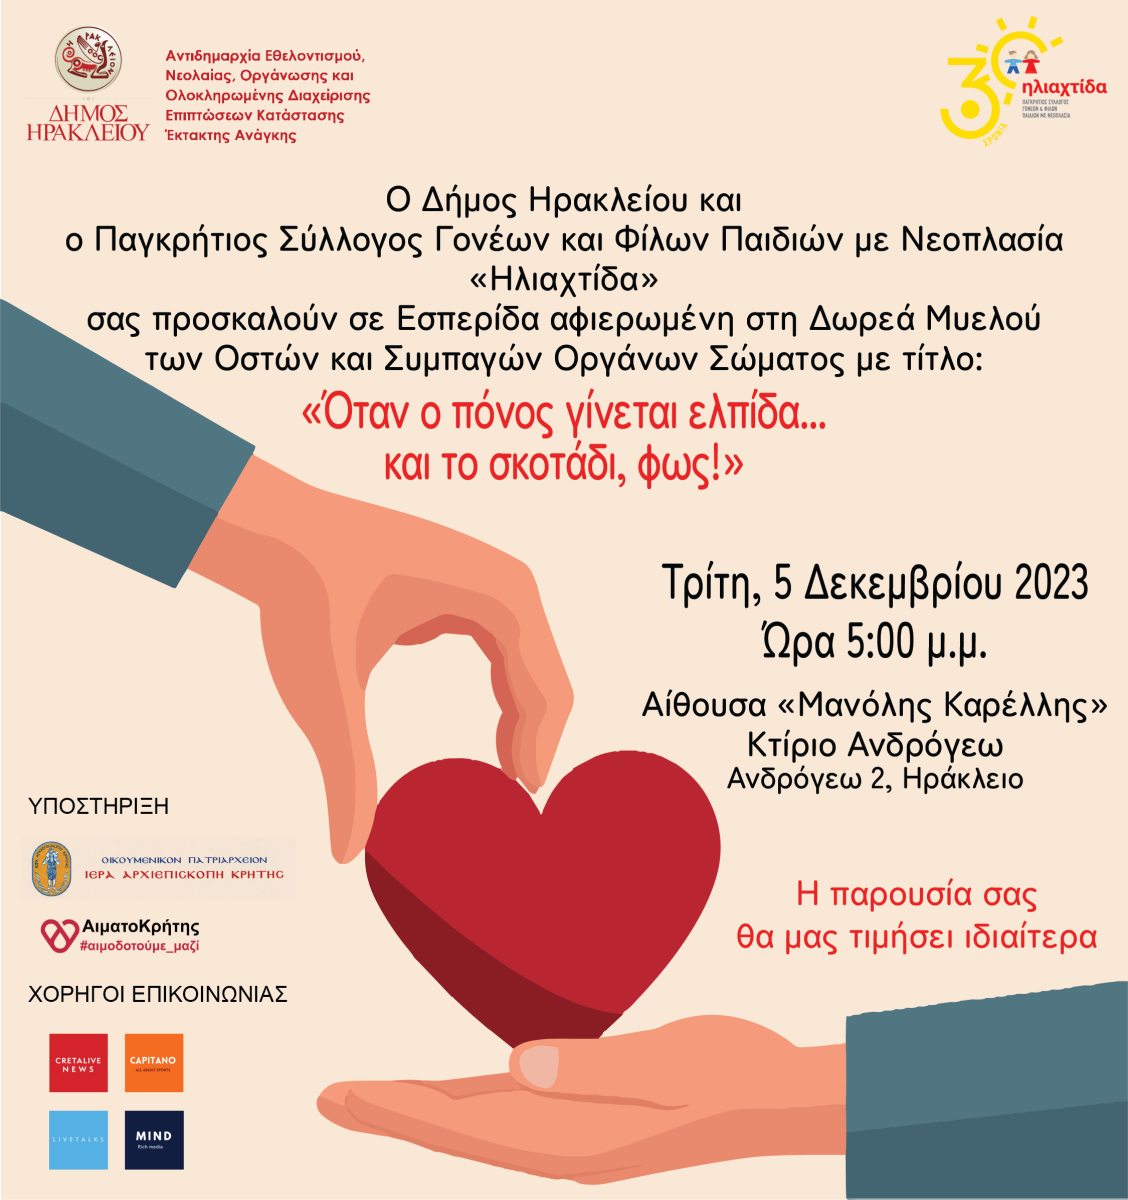 Εκδηλώσεις του Δήμου Ηράκλειου για τον Εορτασμό της Παγκόσμιας Ημέρας Εθελοντισμού